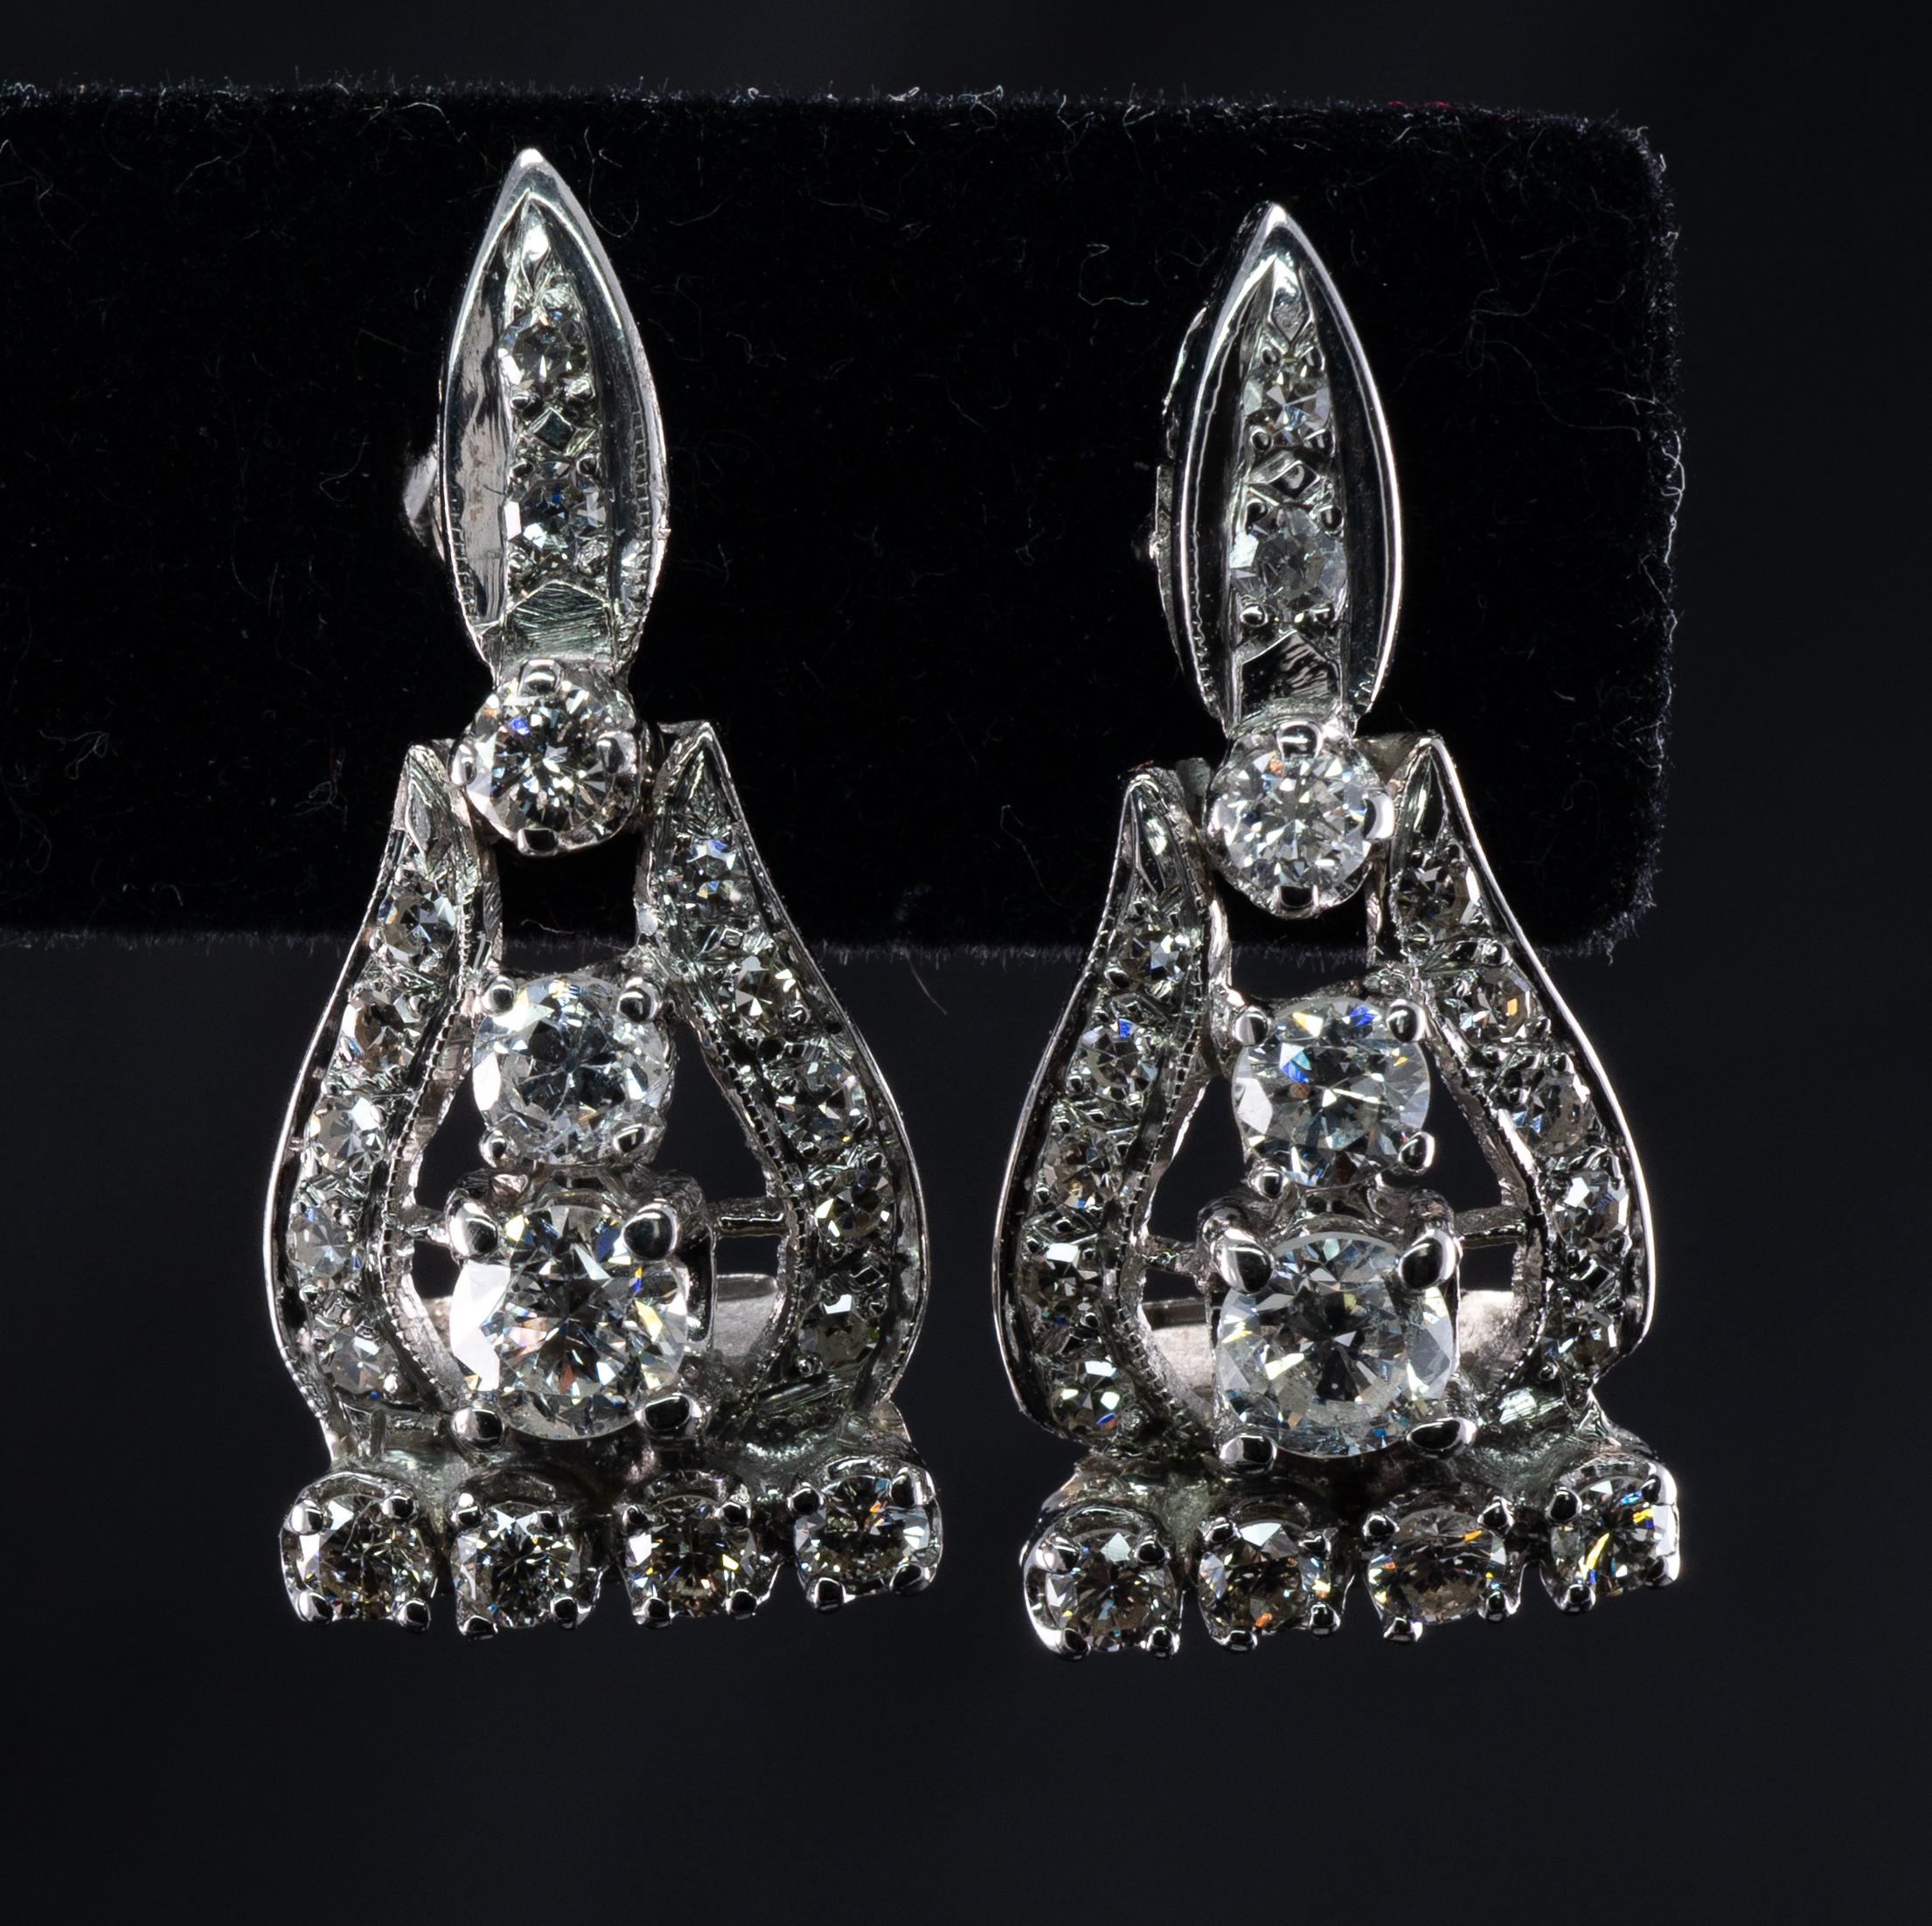 Boucles d'oreilles en or blanc 14K avec diamants naturels 1,72 ct. 

Ces boucles d'oreilles vintage sont fabriquées en or blanc massif 14K (testé et garanti).
Chaque boucle d'oreille contient 19 diamants ronds et taillés à la main.
Le plus gros